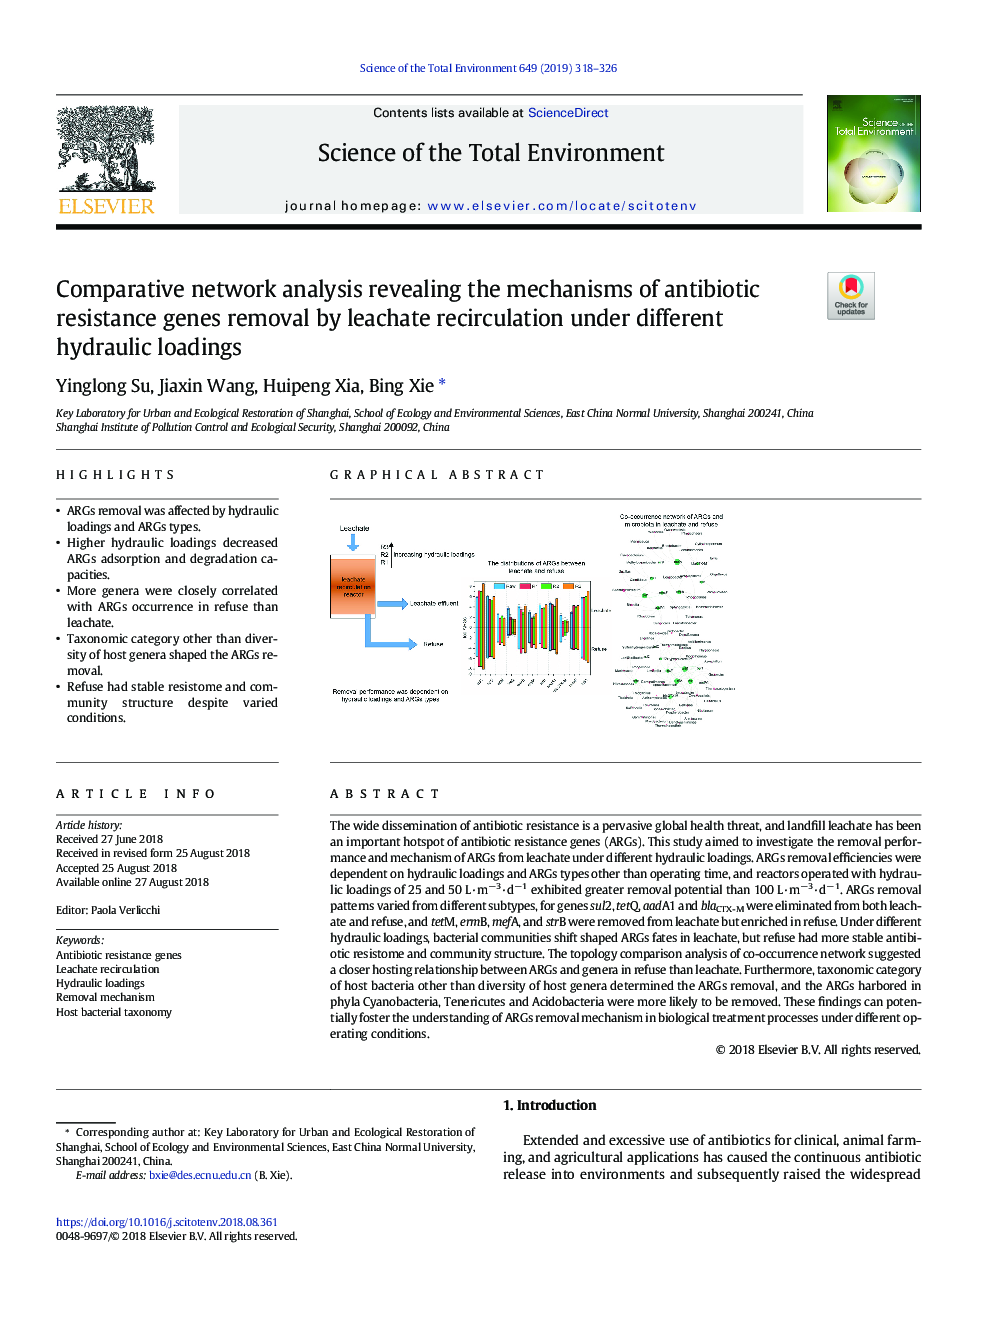 تجزیه و تحلیل شبکه مقایسهای نشان داد که مکانیسمهای حذف ژنهای مقاومت آنتیبیوتیک توسط سیکل سیلت تحت بارهای هیدرولیکی متفاوت است